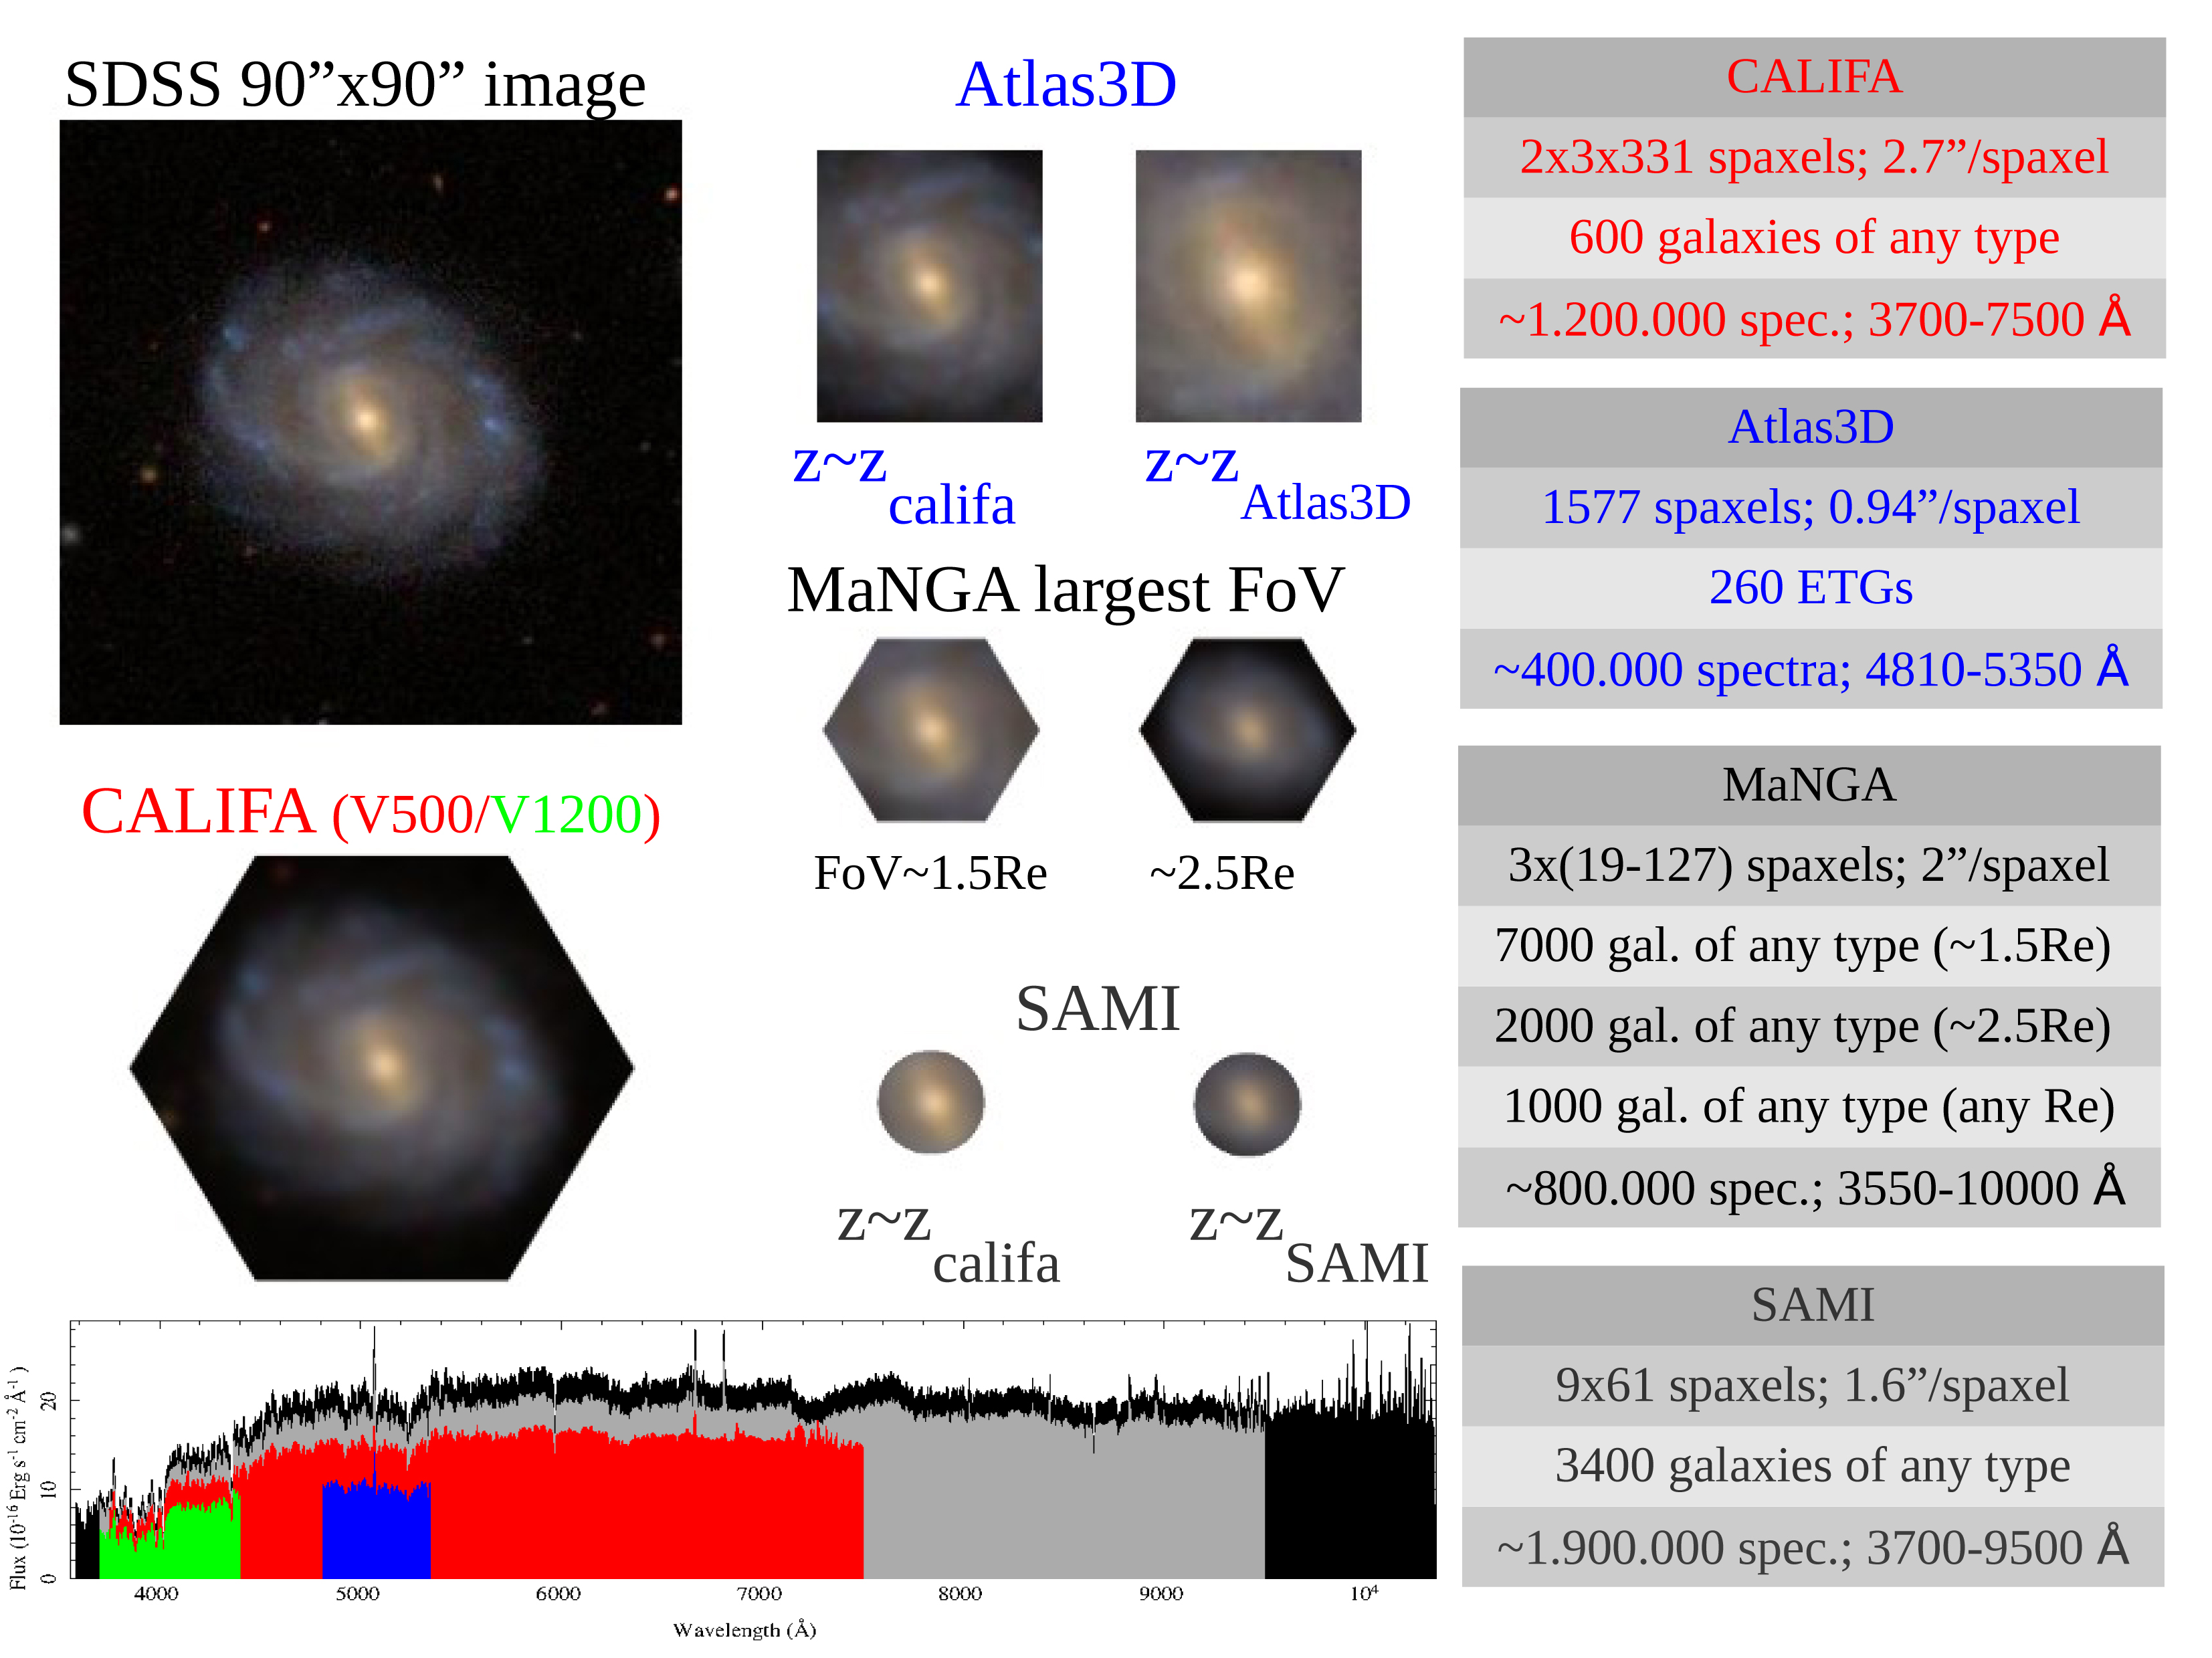 Comparación entre los diferentes muestreos de galaxias utilizando datos de espectroscopía 3D. Las imágenes muestran una comparación entre la resolución de imagen y el campo cubierto por muestreos de imagen directa desde telescopios en tierra (SDSS) y muestreos de espectroscopía 3D, tales como CALIFA (rojo y verde), Atlas3D (azul), MaNGA (negro) y SAMI (gris), junto con el rango espectral cubierto (abajo). Se puede apreciar que CALIFA comprende el mejor compromiso entre campo cubierto y capacidad de resolución espacial. El cuadro explicativo resume las características de cada muestreo.